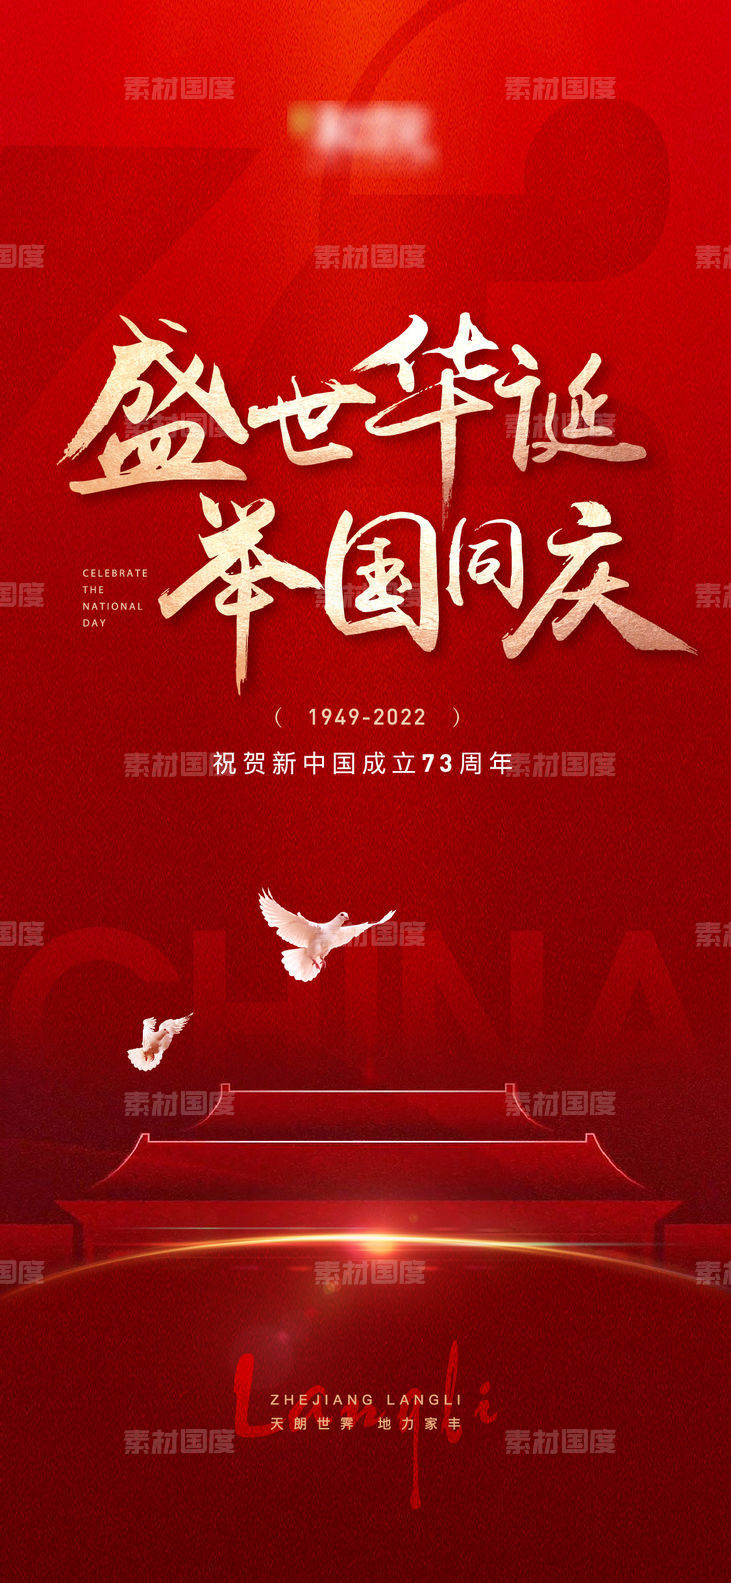 国庆元旦周年庆活动海报展板